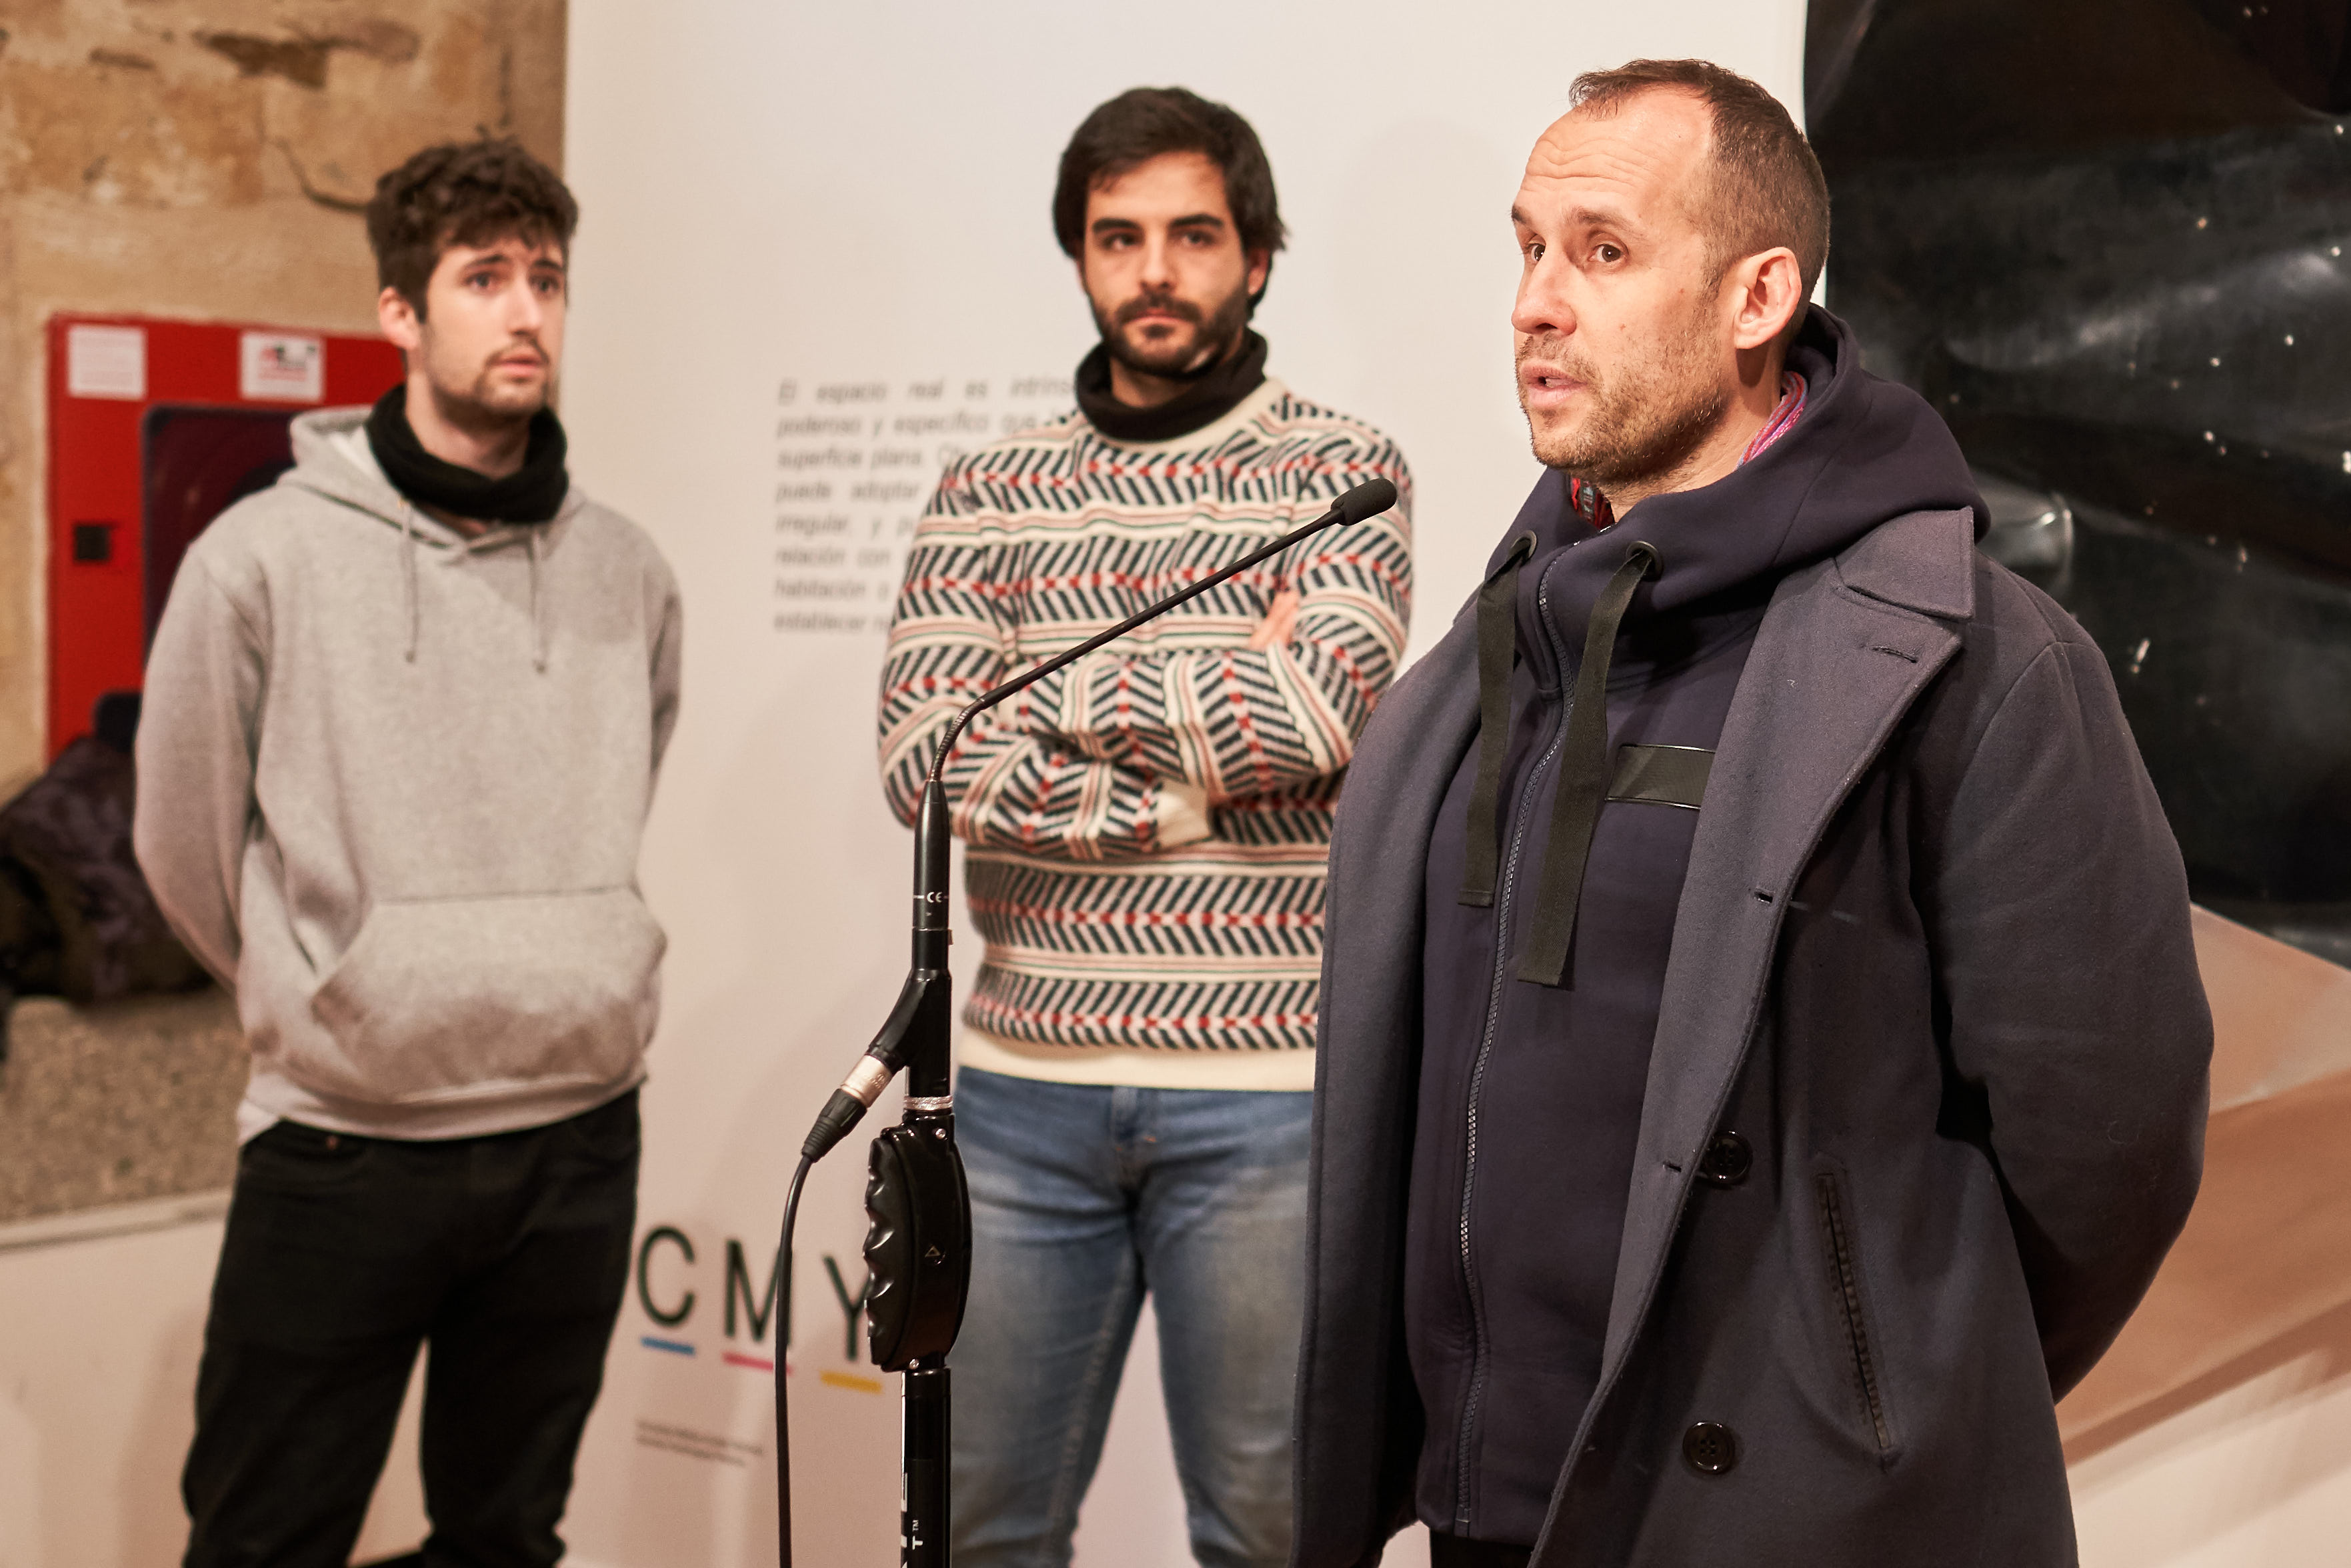  La Universidad de Salamanca inaugura la exposición ‘CMYK’ en el Espacio Experimental de Fonseca